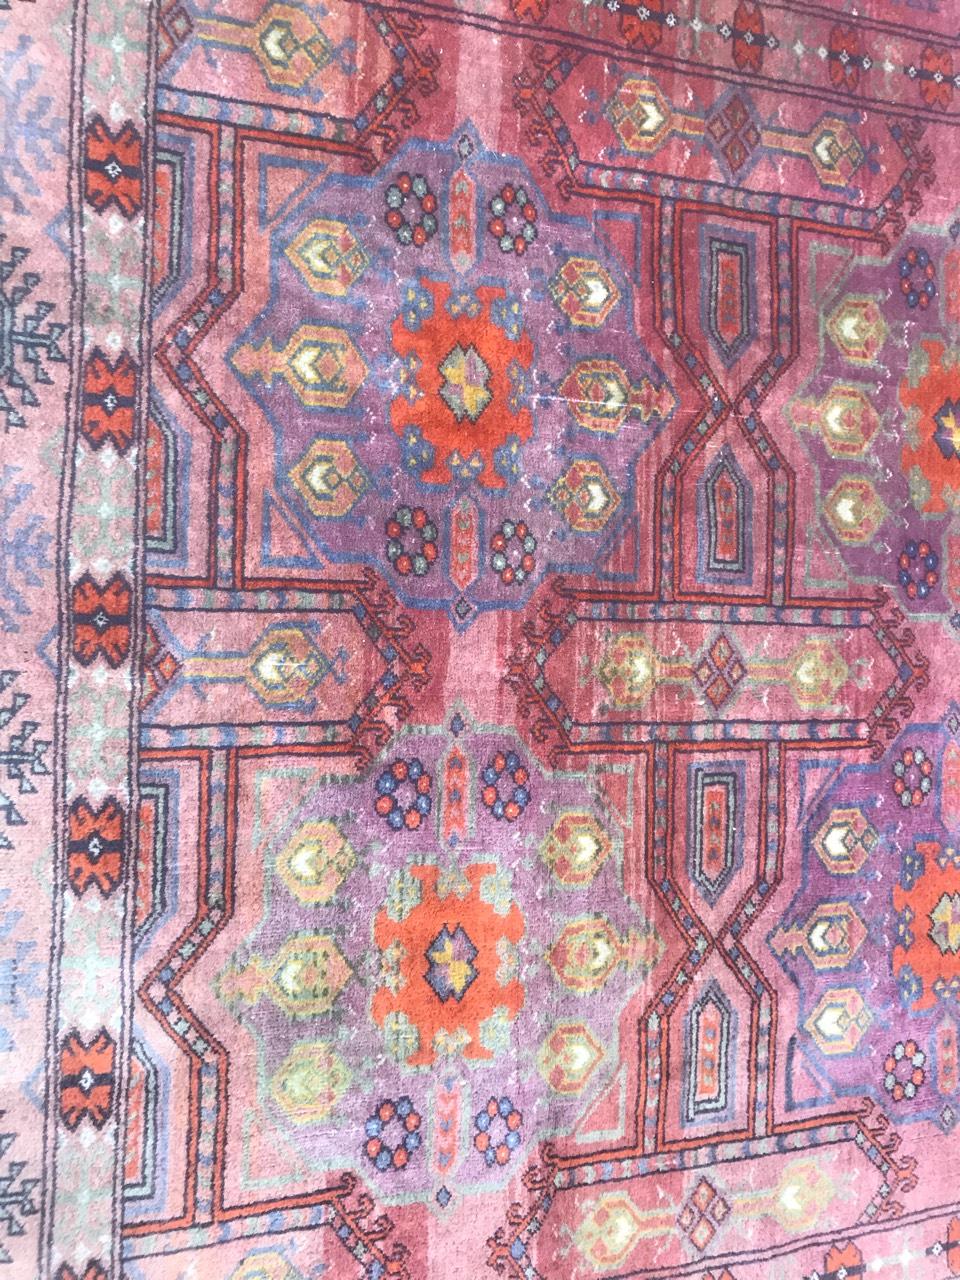 Schöner turkmenischer Teppich mit schönem geometrischem Muster und lila und rosa Feldfarben mit Blau und Grün. Vollständig und fein handgeknüpft mit Wollsamt auf Wollbasis.

✨✨✨
